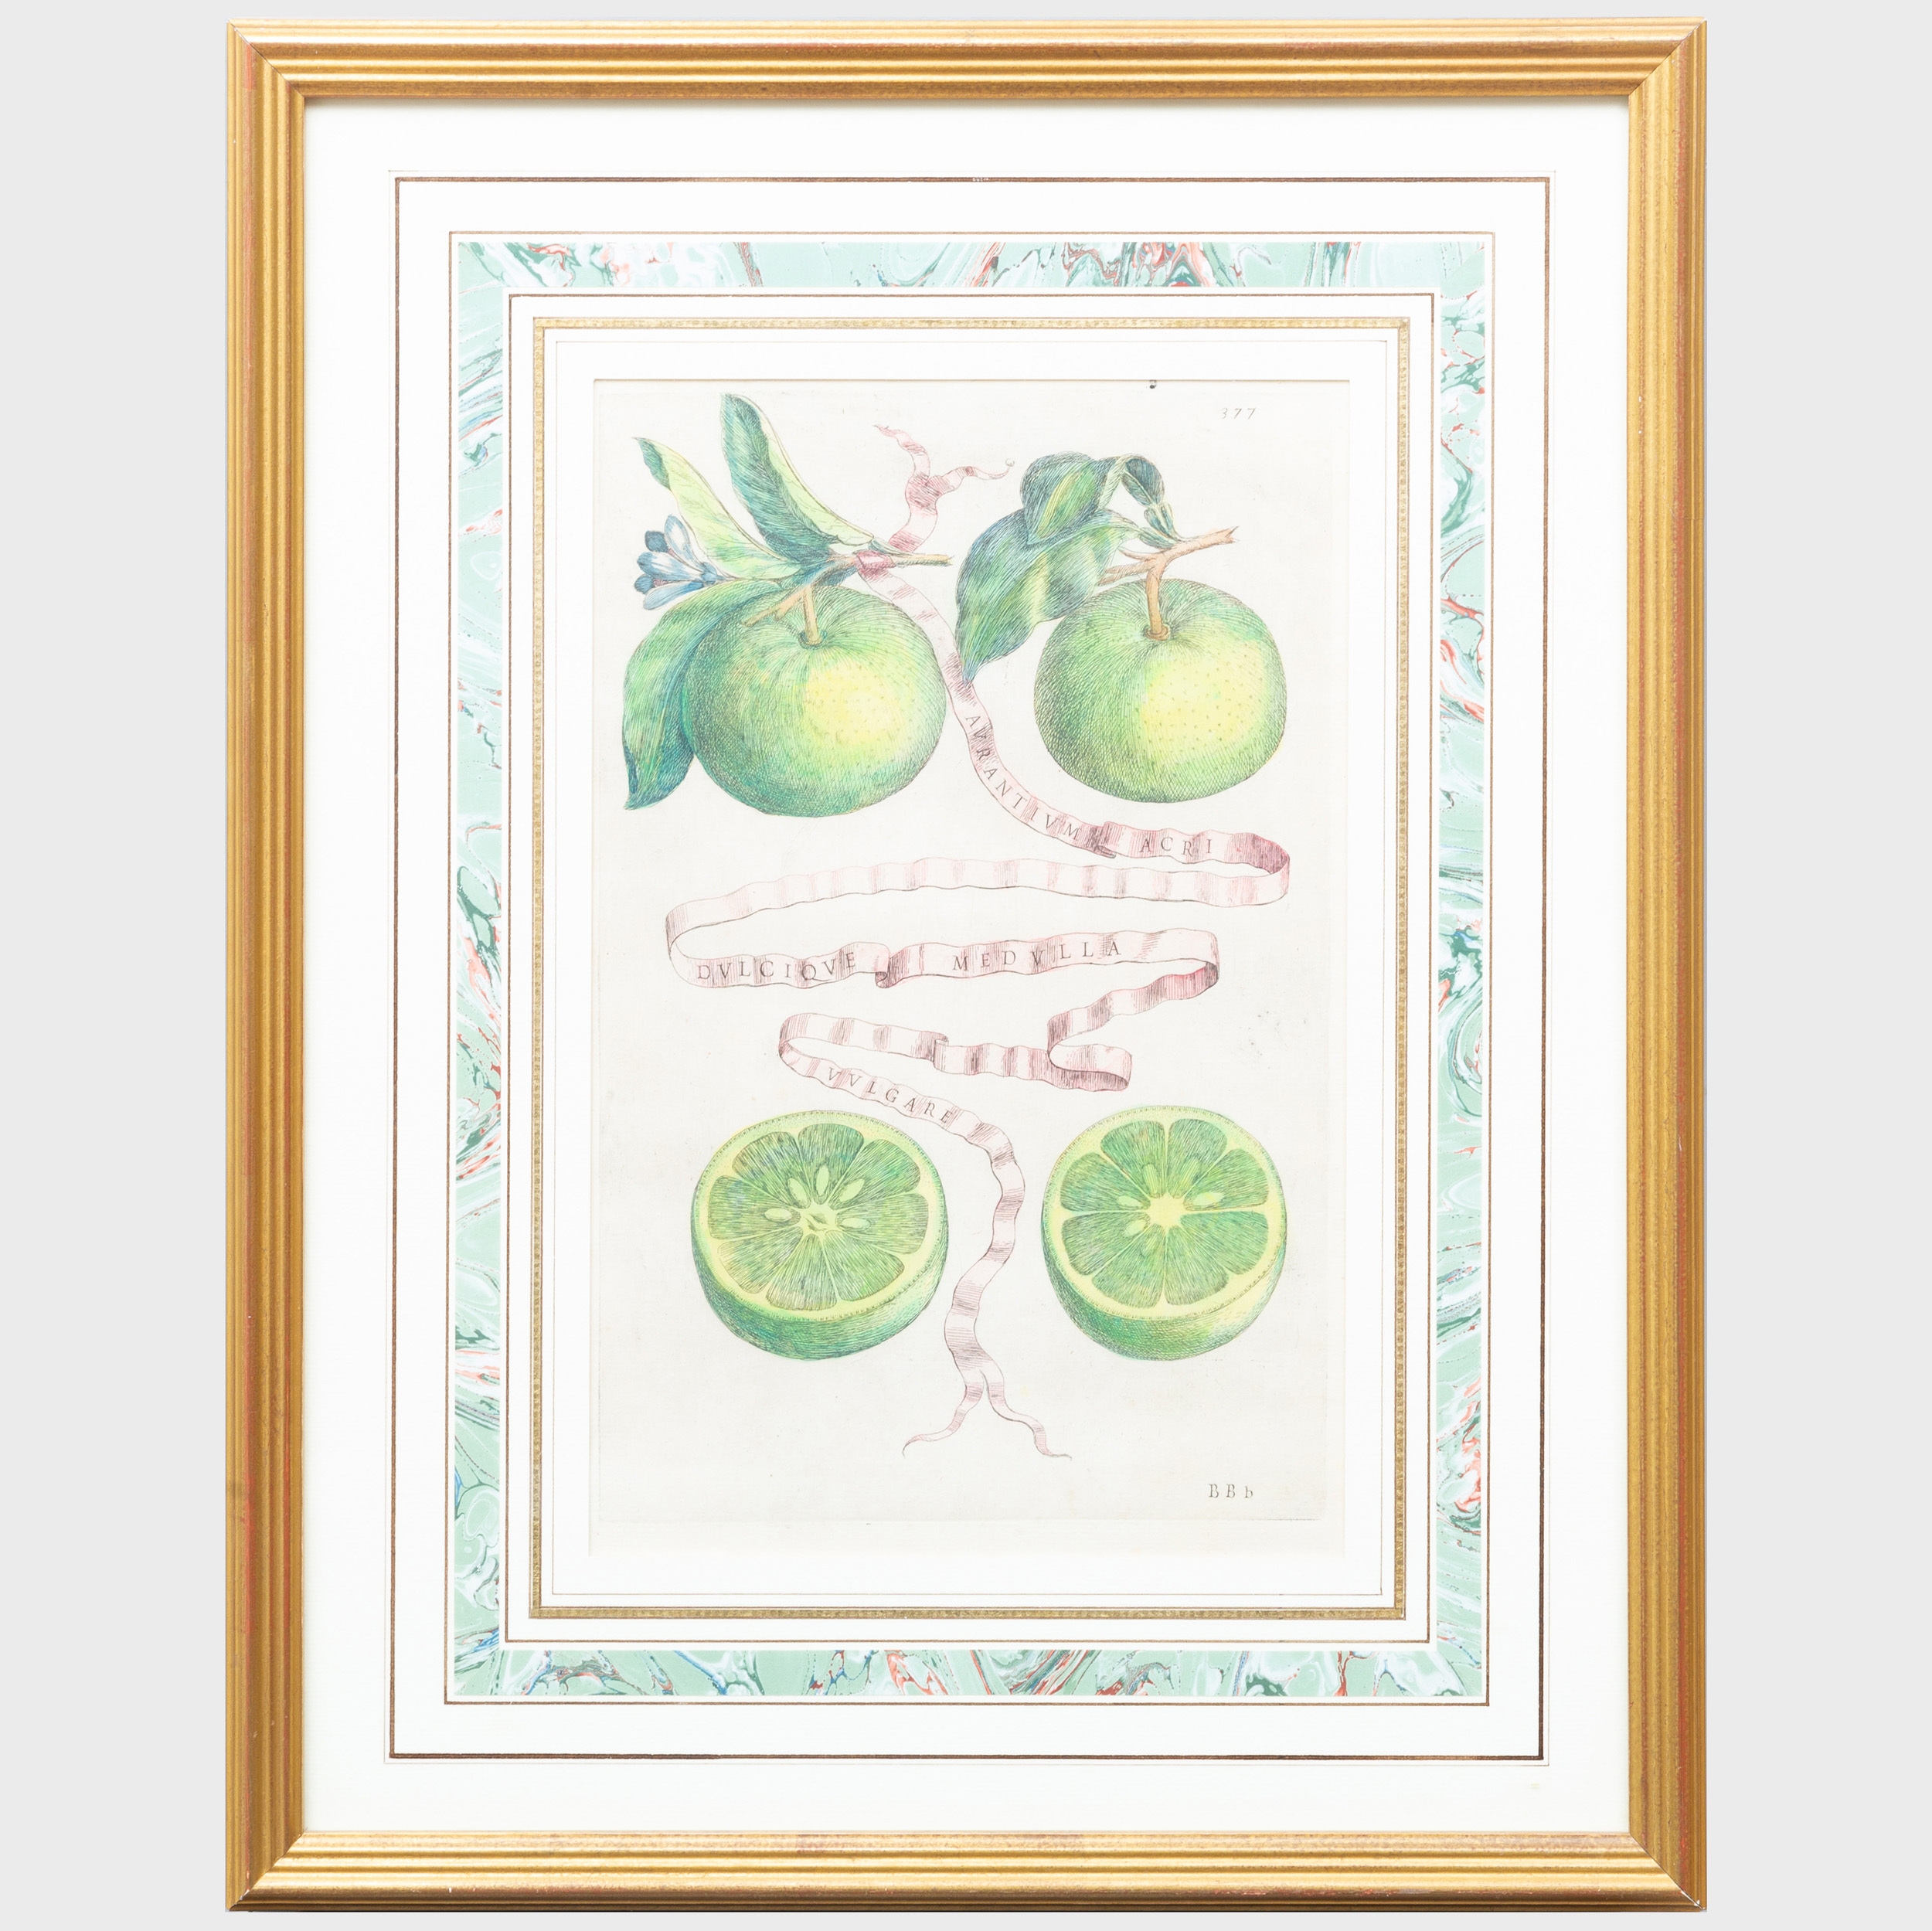 Citrus: Two Plates, from Hesperides Sive de Malorum by Giovanni Battista Ferrari